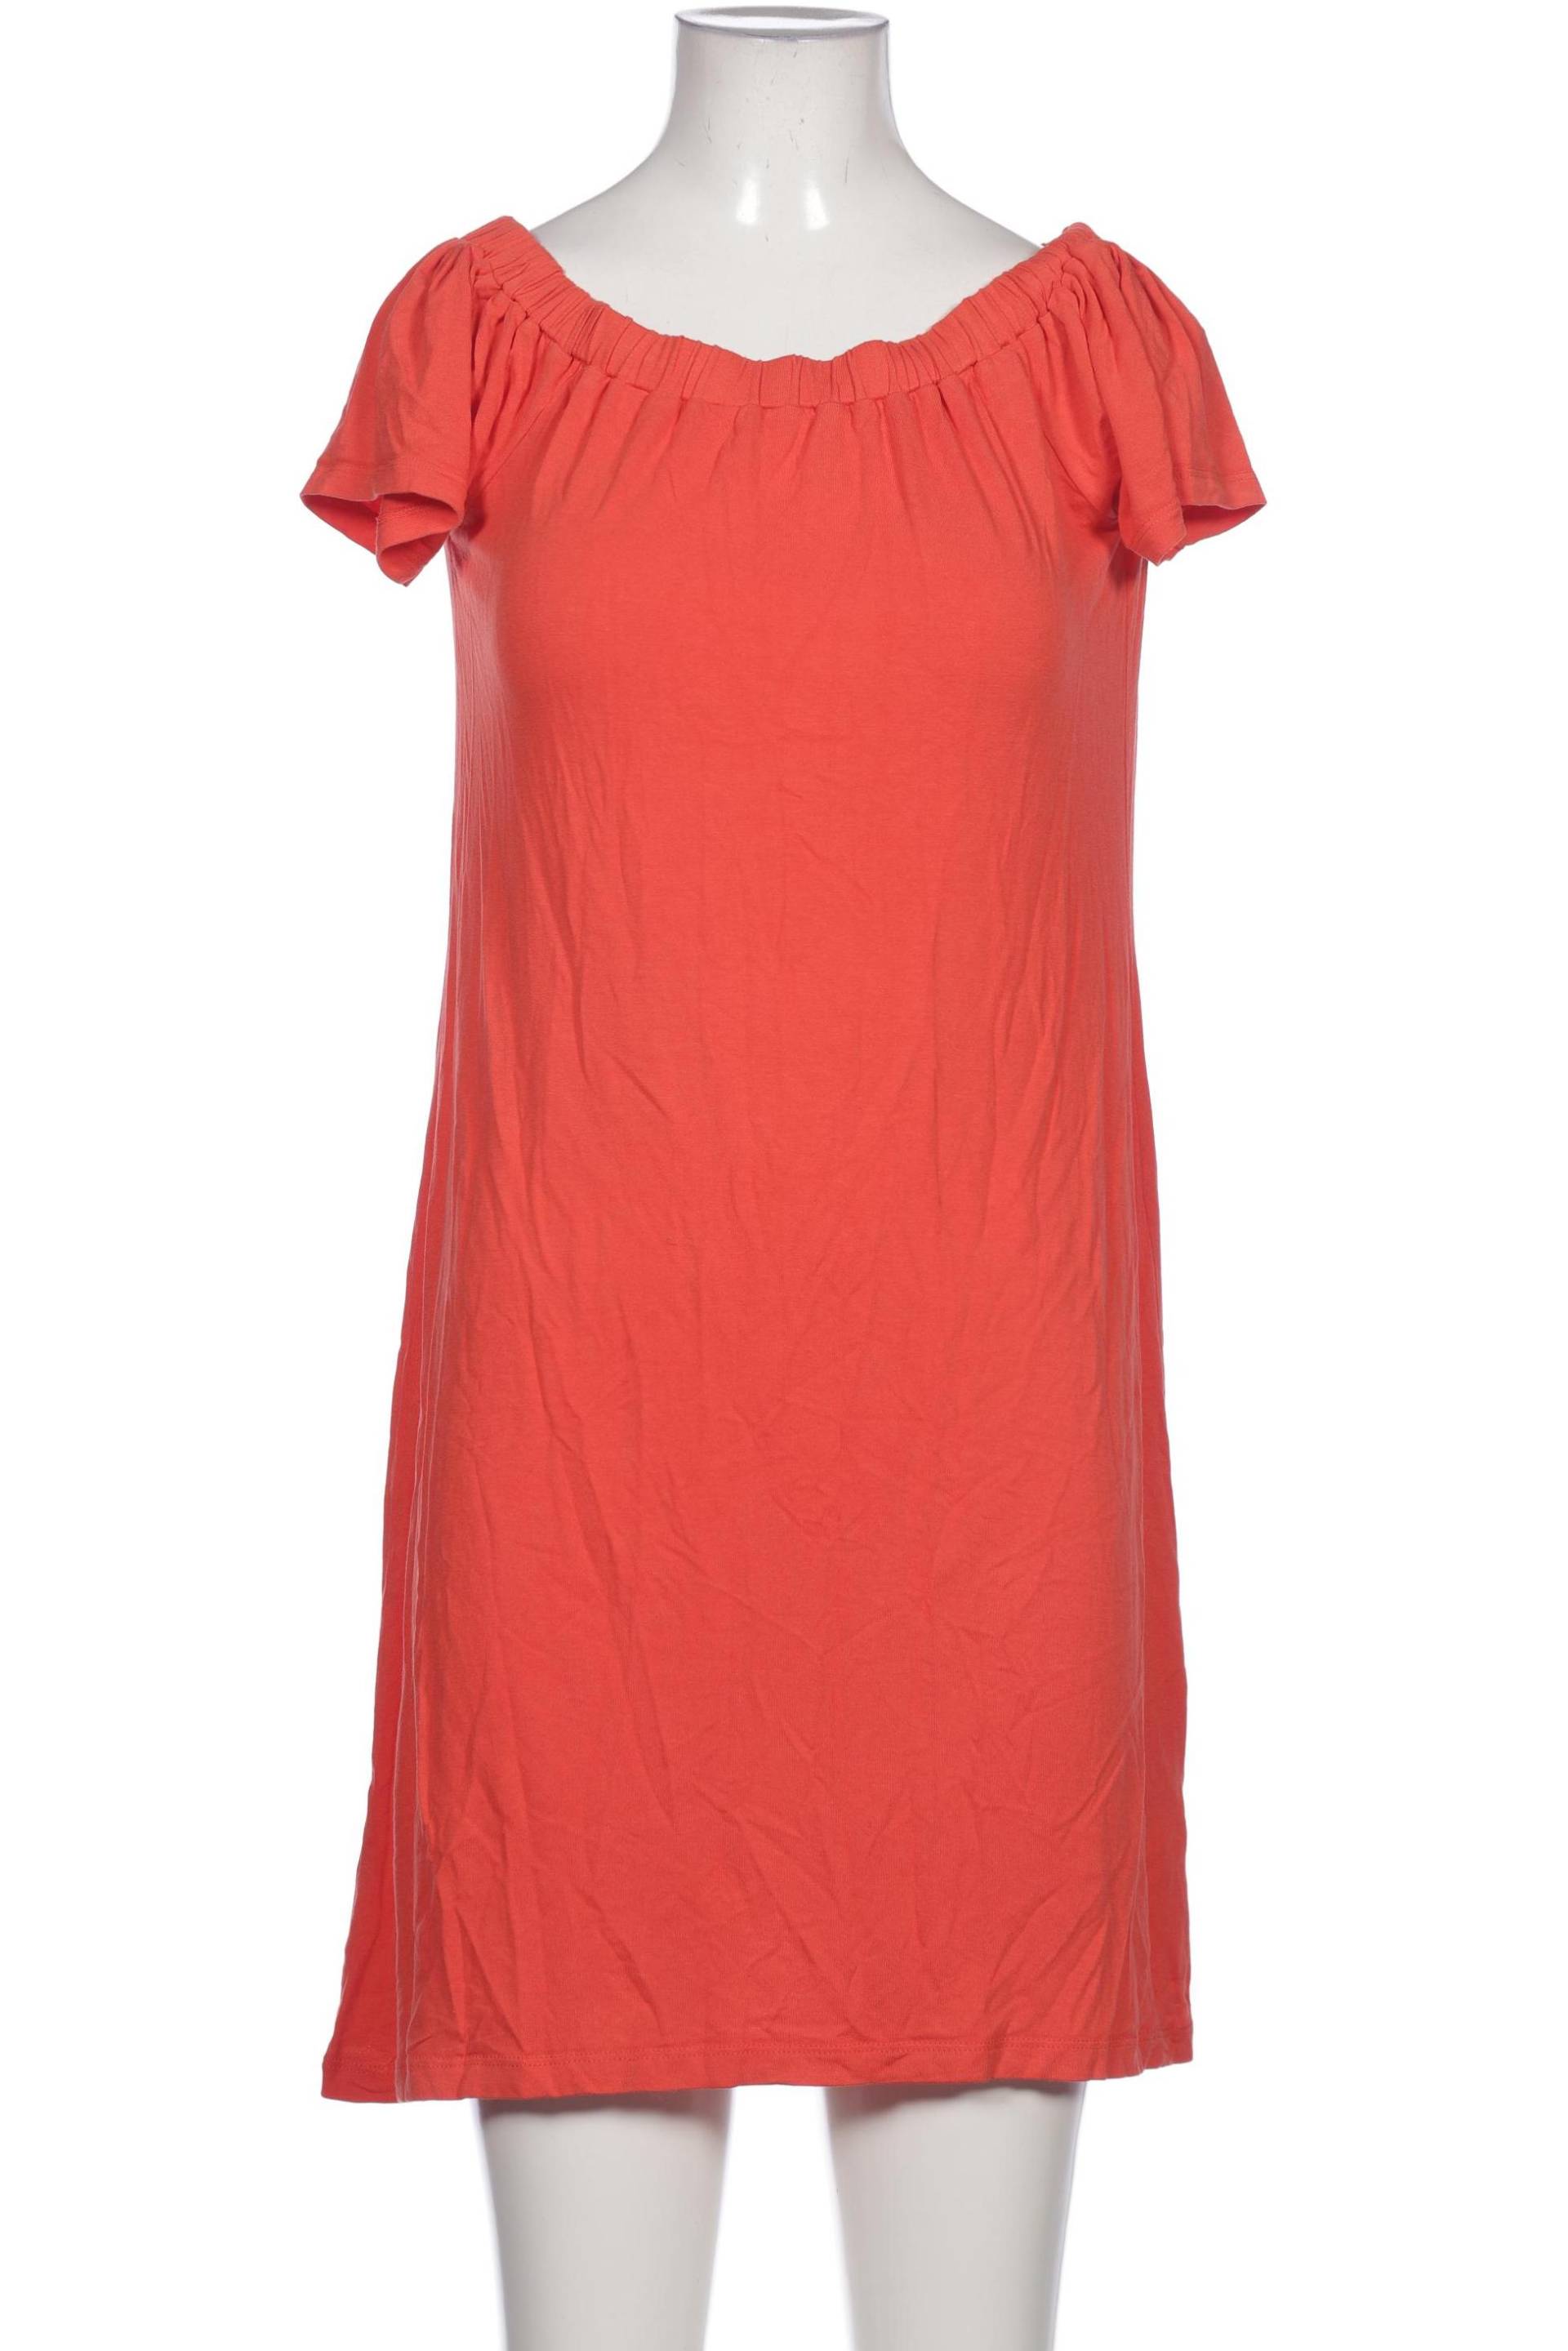 Heine Damen Kleid, orange, Gr. 36 von heine